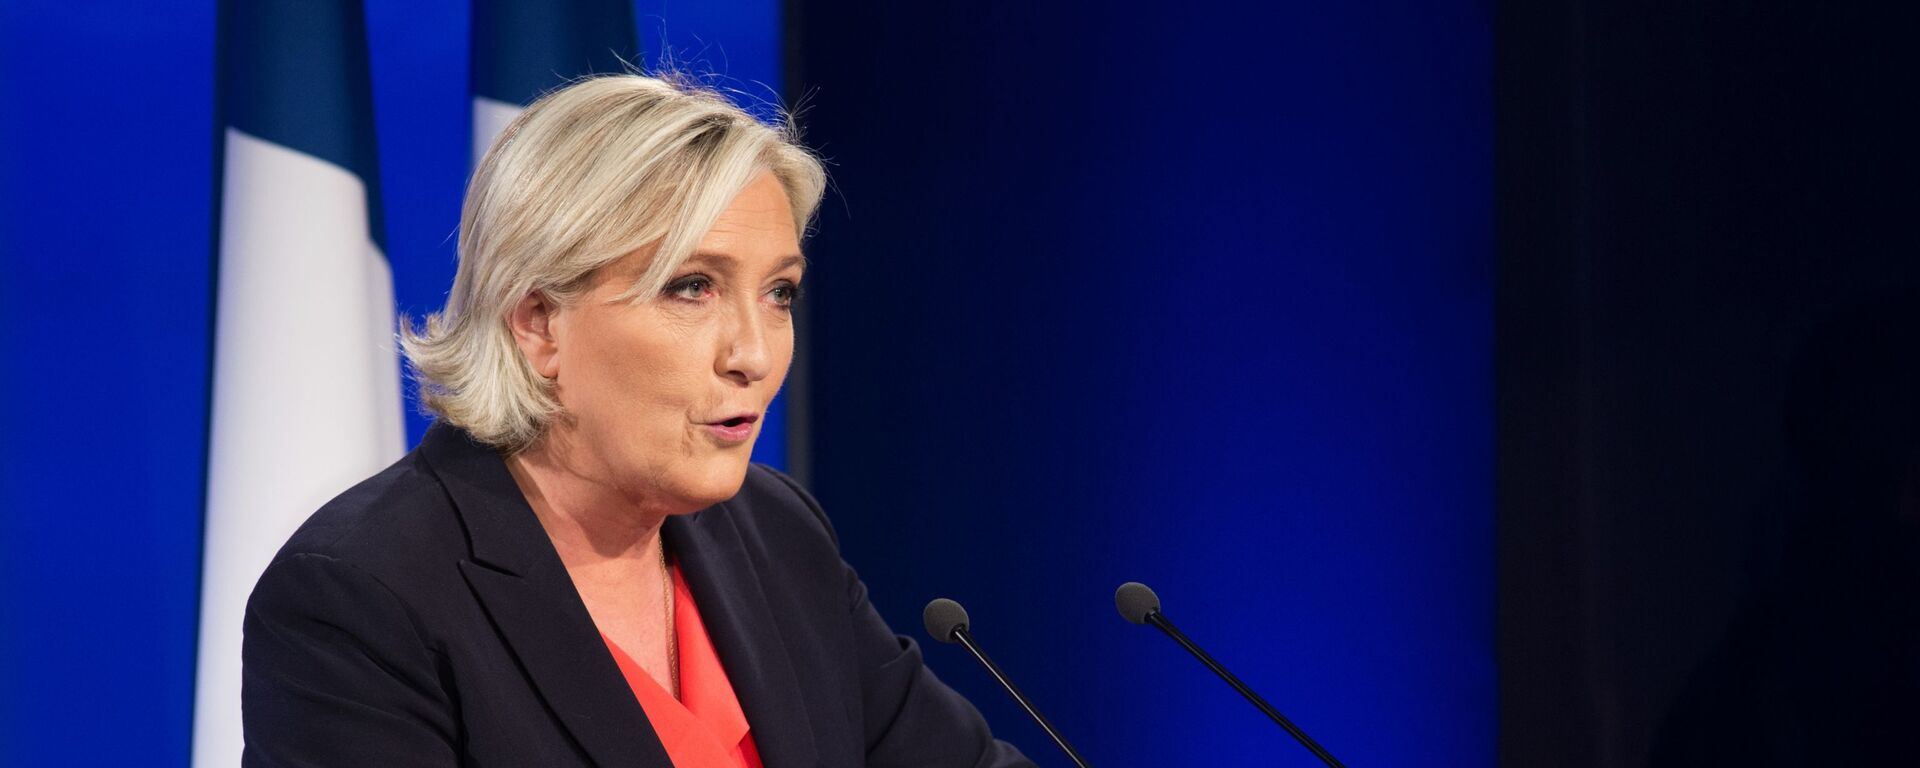 Marine Le Pen, política francesa, líder del partido Agrupación Nacional - Sputnik Mundo, 1920, 01.03.2021